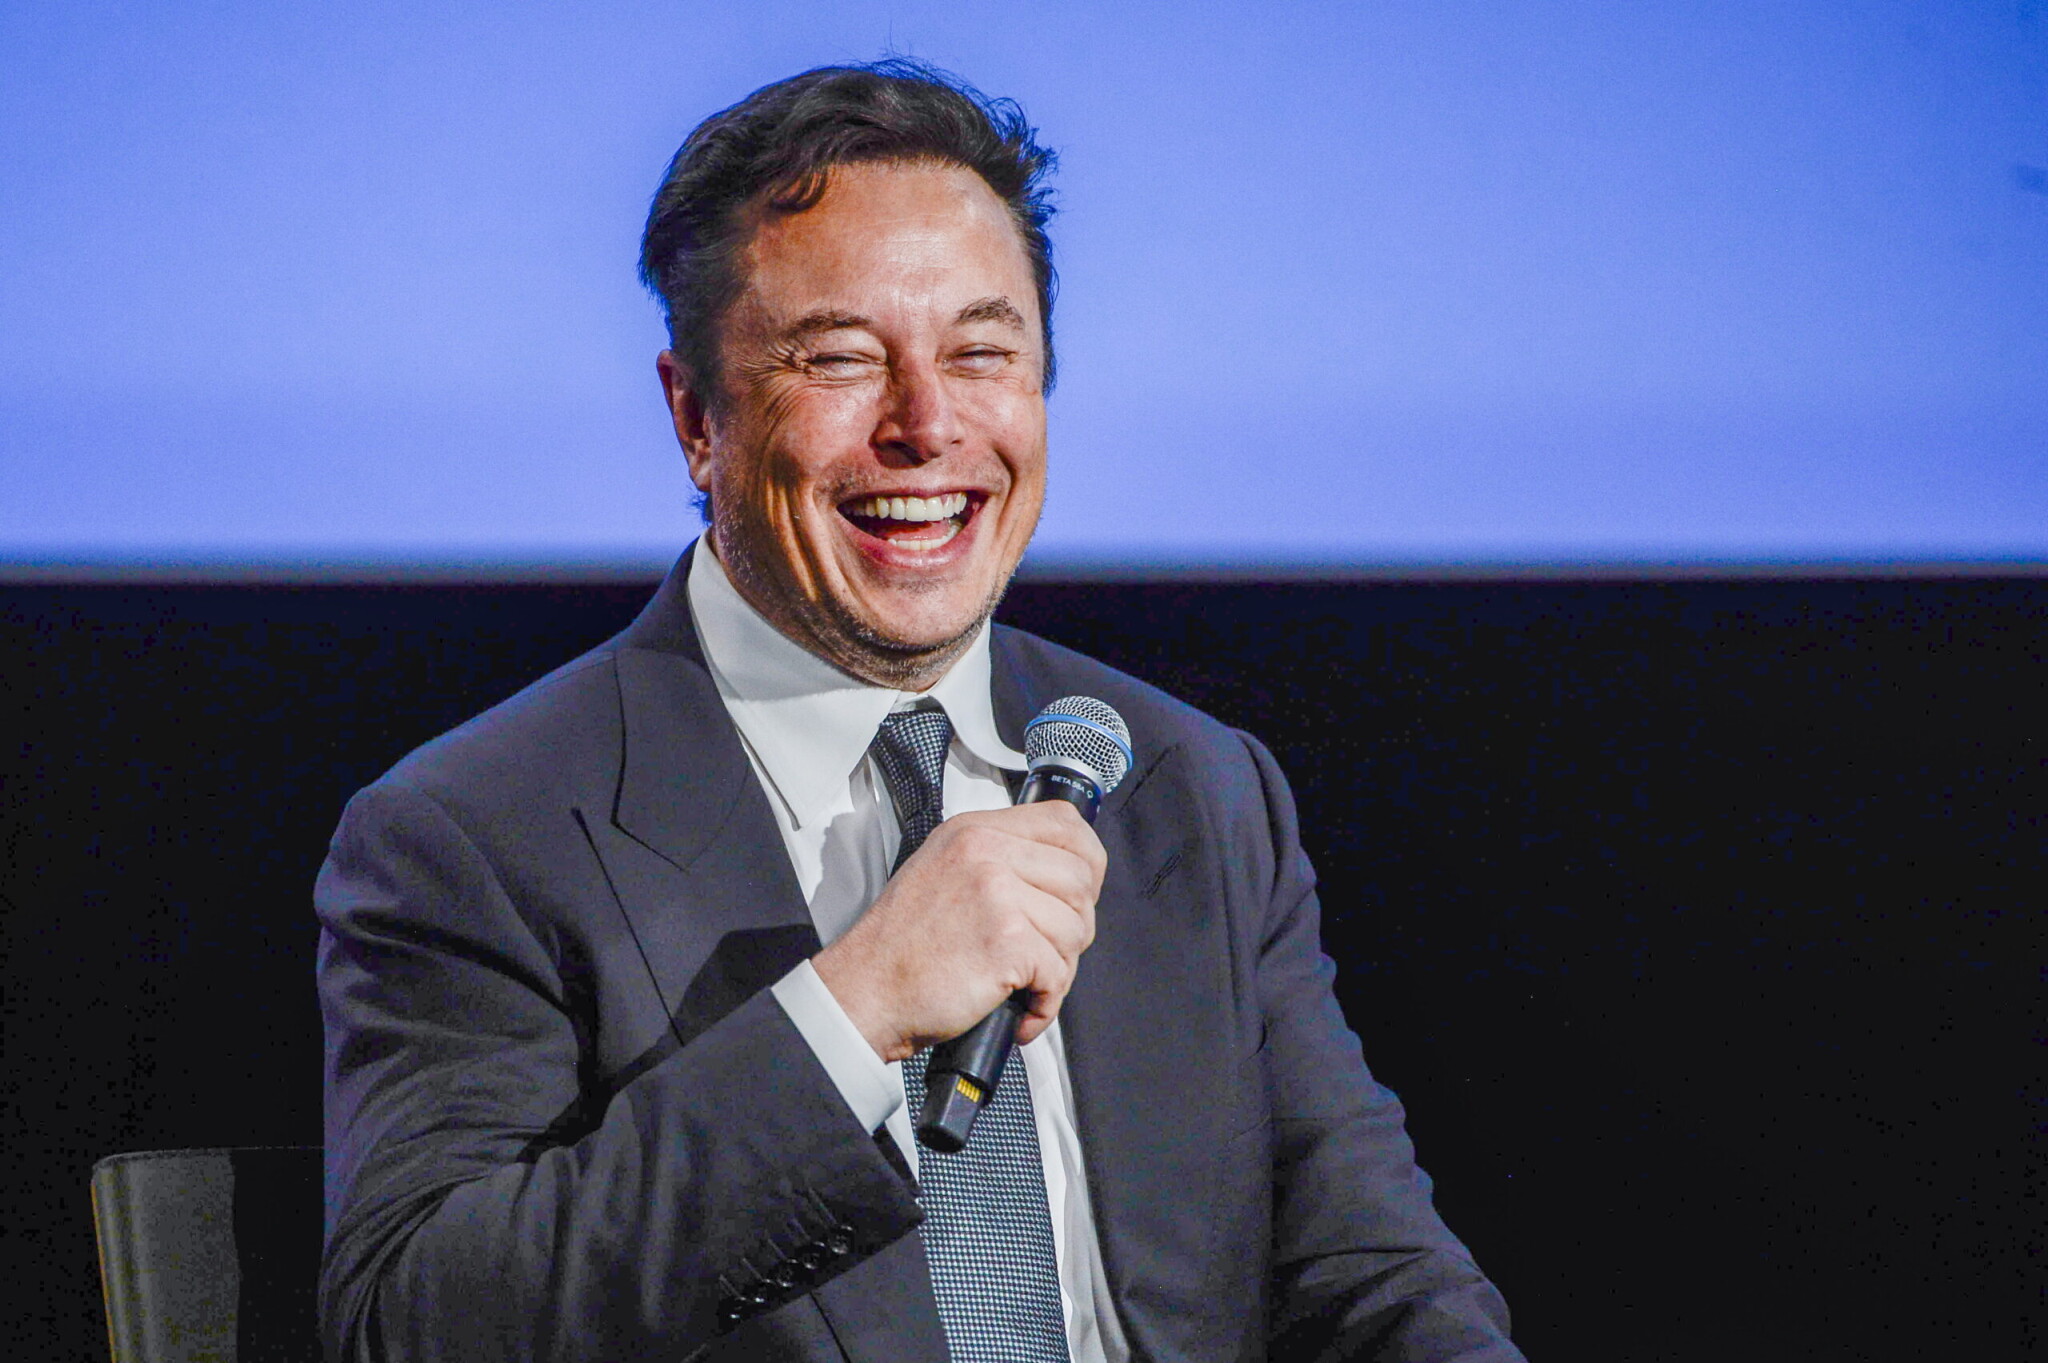 Óriási rekordot döntött a Tesla, Musk mégis nagyot bukott rajta